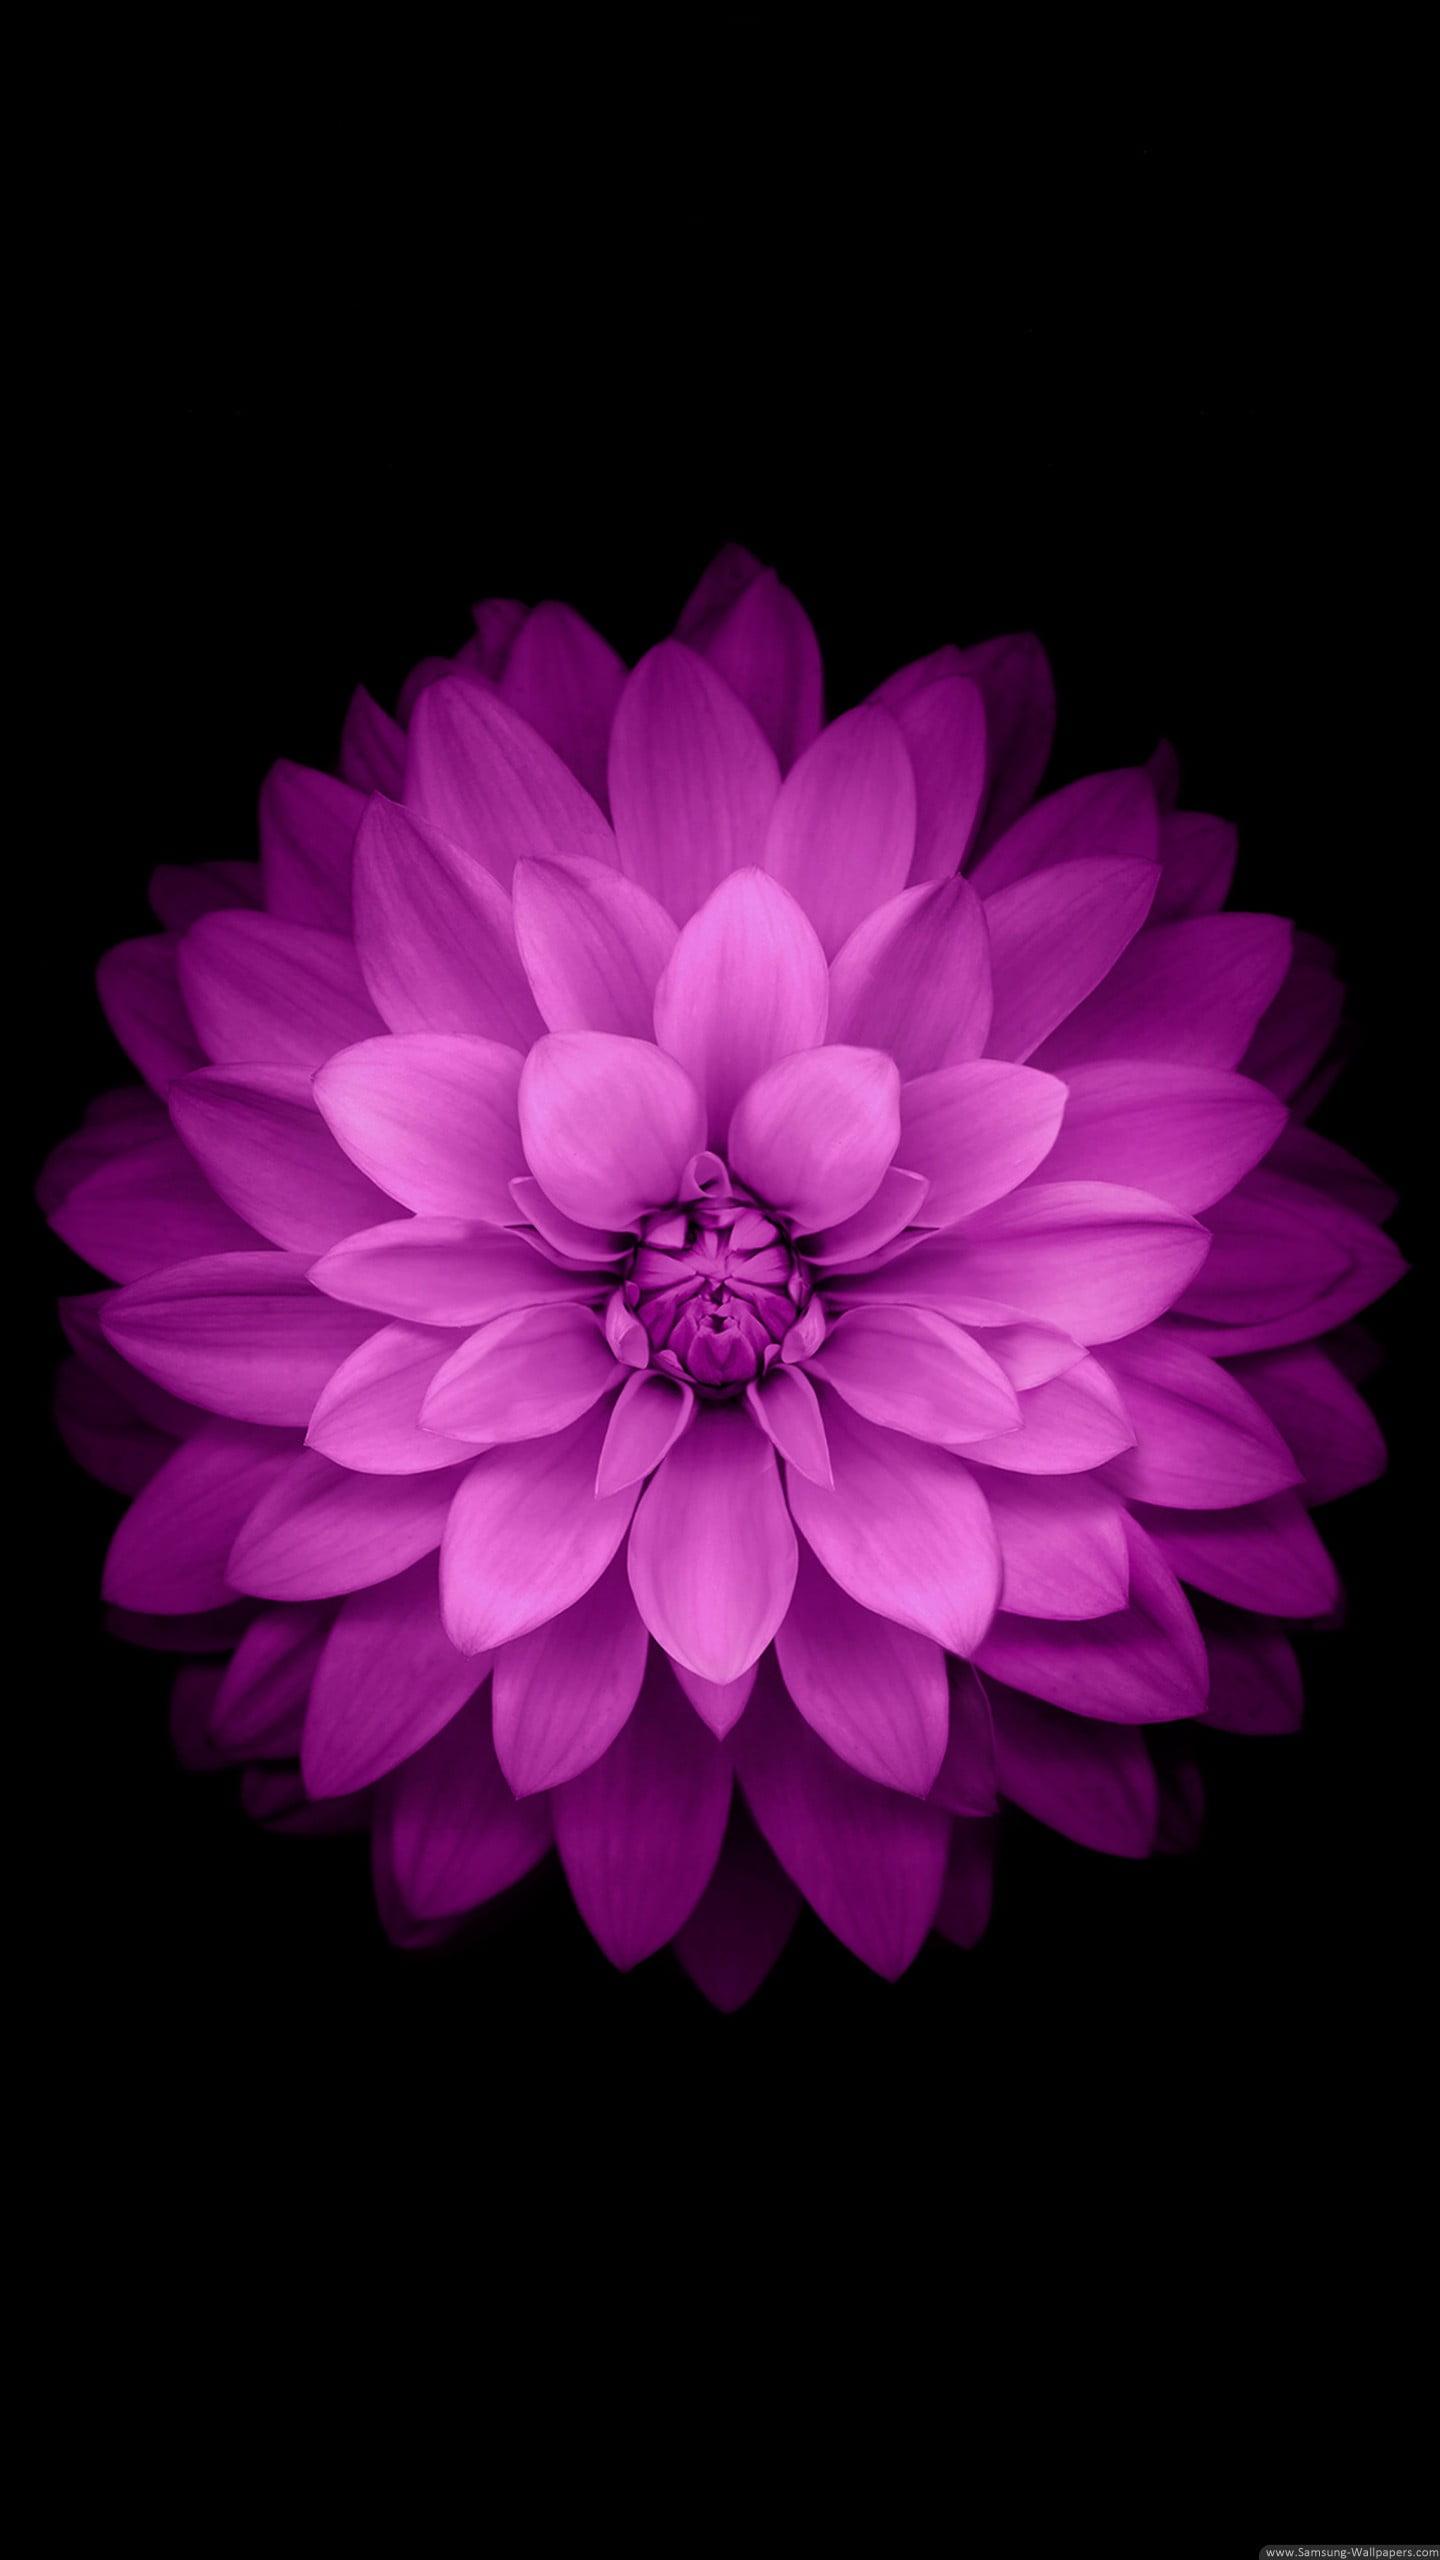 Pink petaled flower, purple flower, black background HD wallpaper